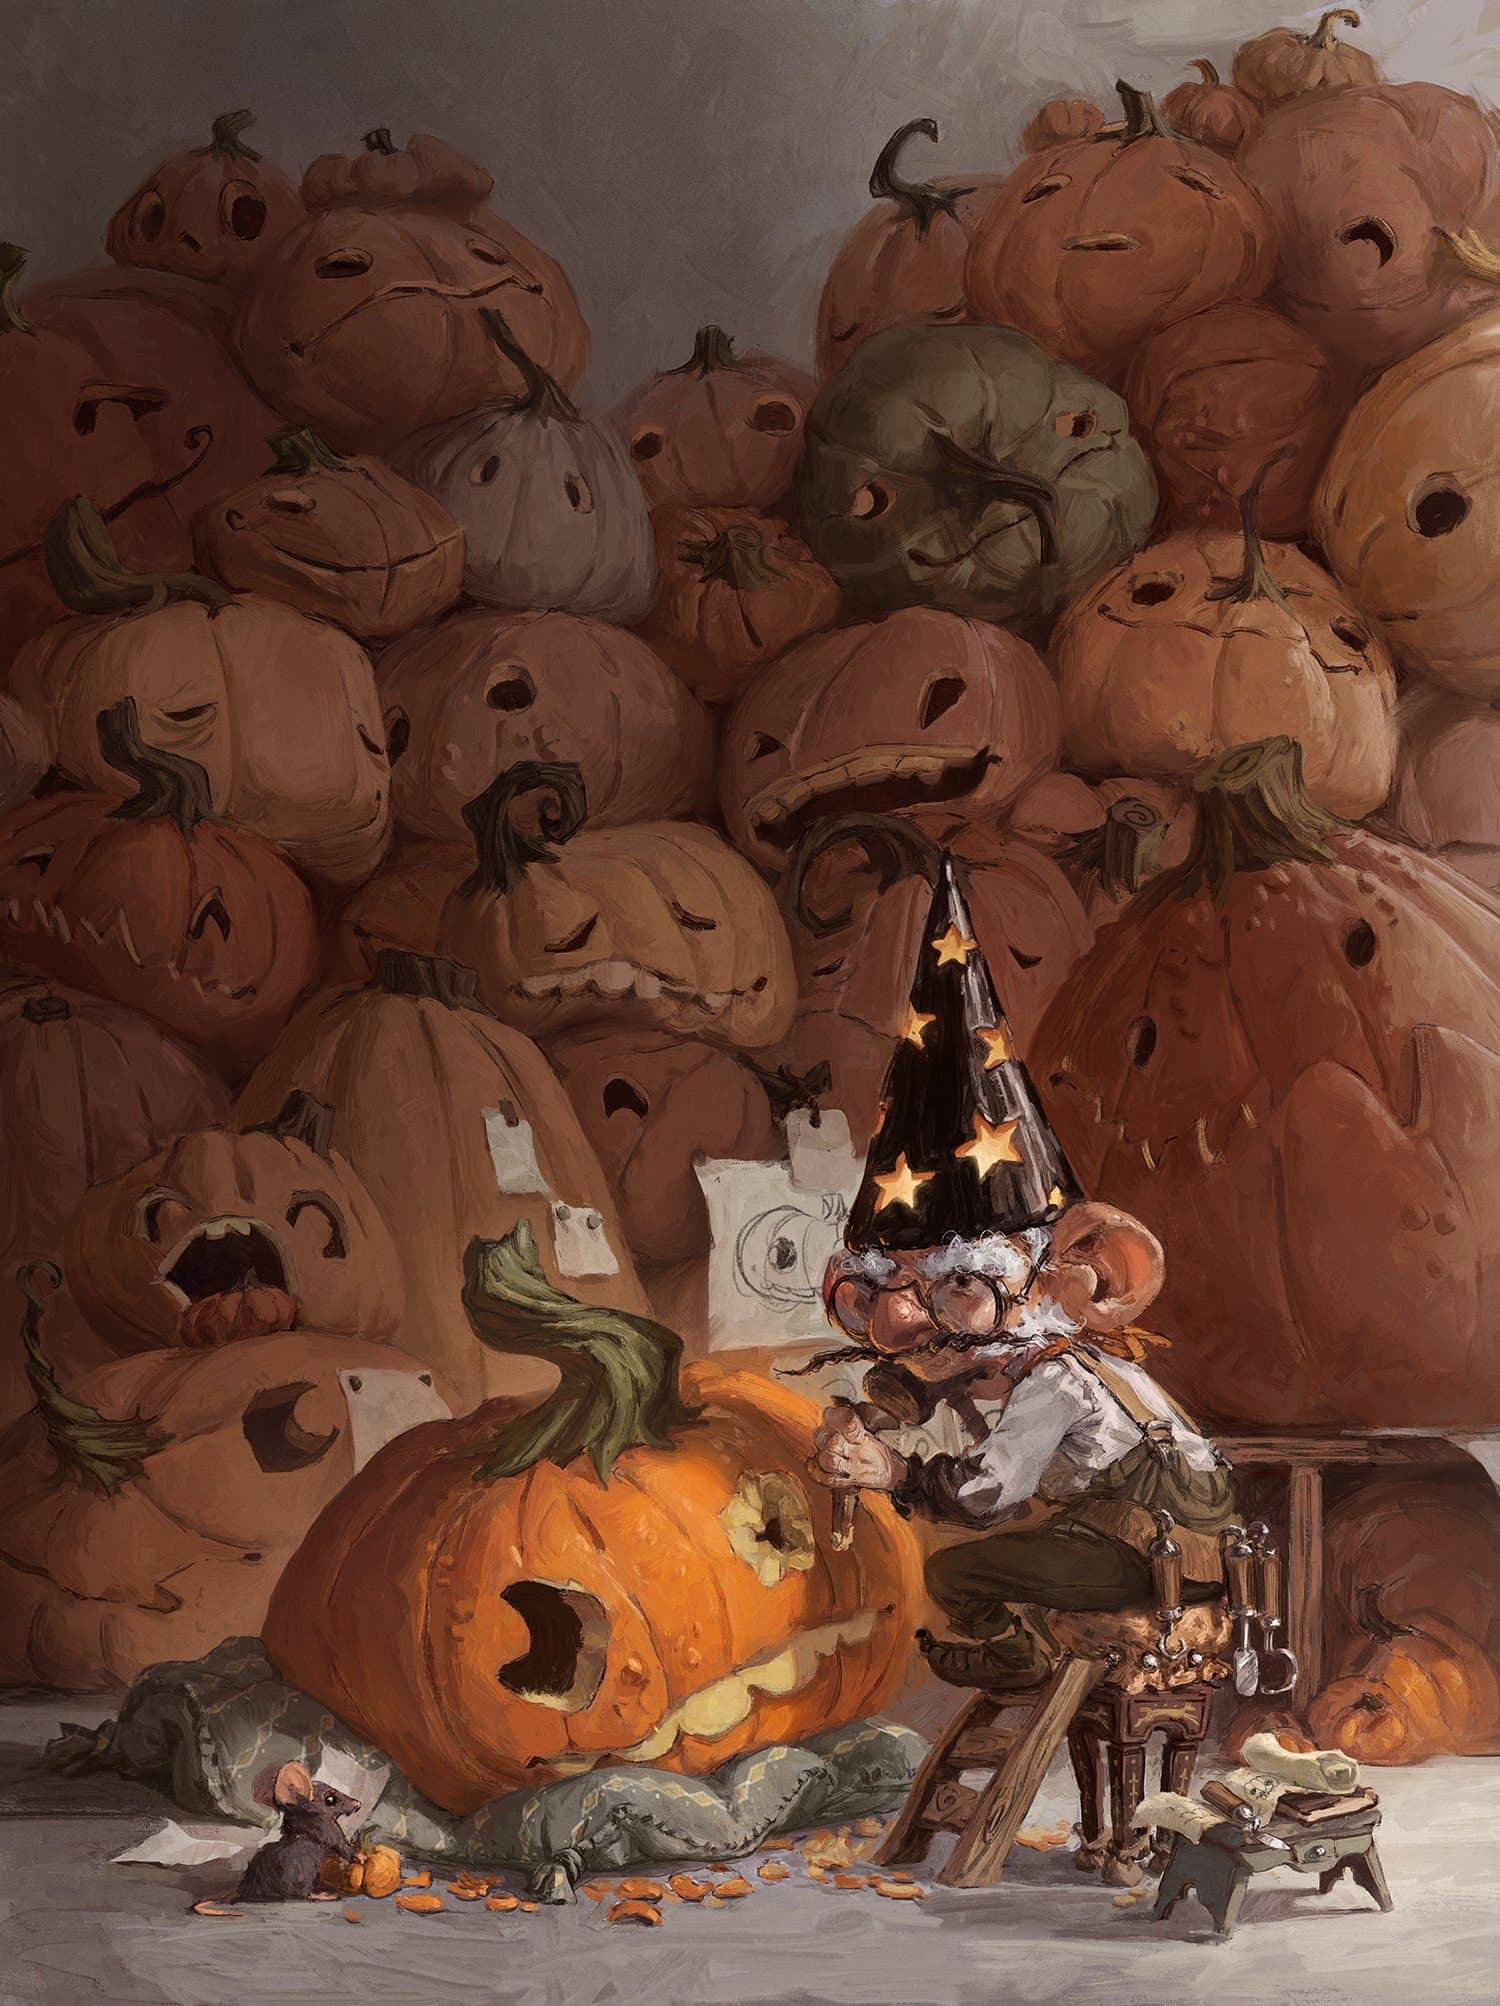 The Pumpkin Carver by Danijela Antunović.